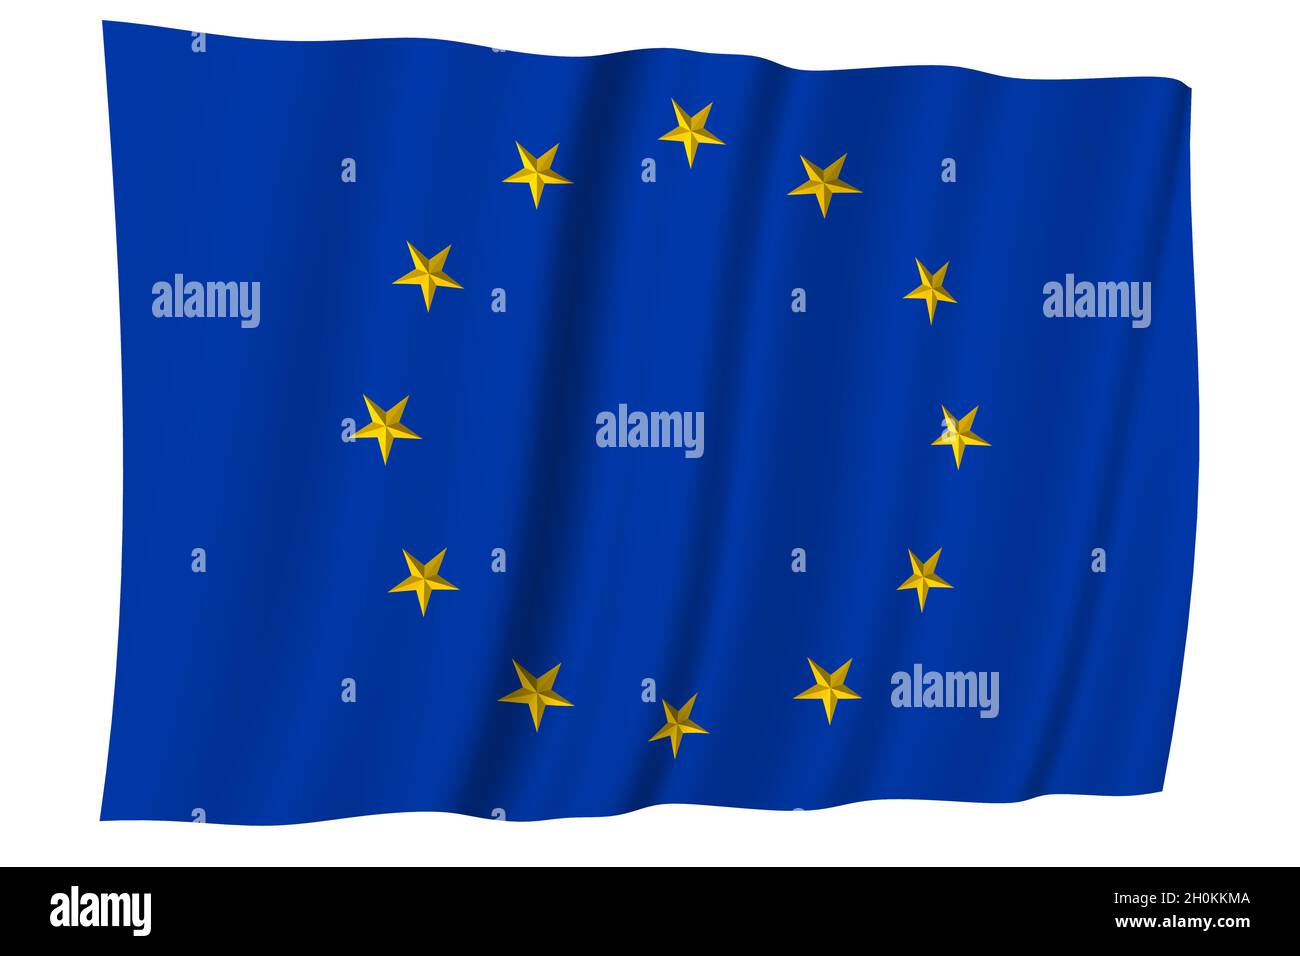 Hãy cùng chiêm ngưỡng hình ảnh liên quan đến lá cờ Liên minh châu Âu - biểu tượng của sự đoàn kết, hòa bình và thịnh vượng đang được đánh giá cao trên toàn thế giới. Bạn sẽ không thể rời mắt khỏi nét đẹp tinh tế và sự đột phá về màu sắc trên cờ này.